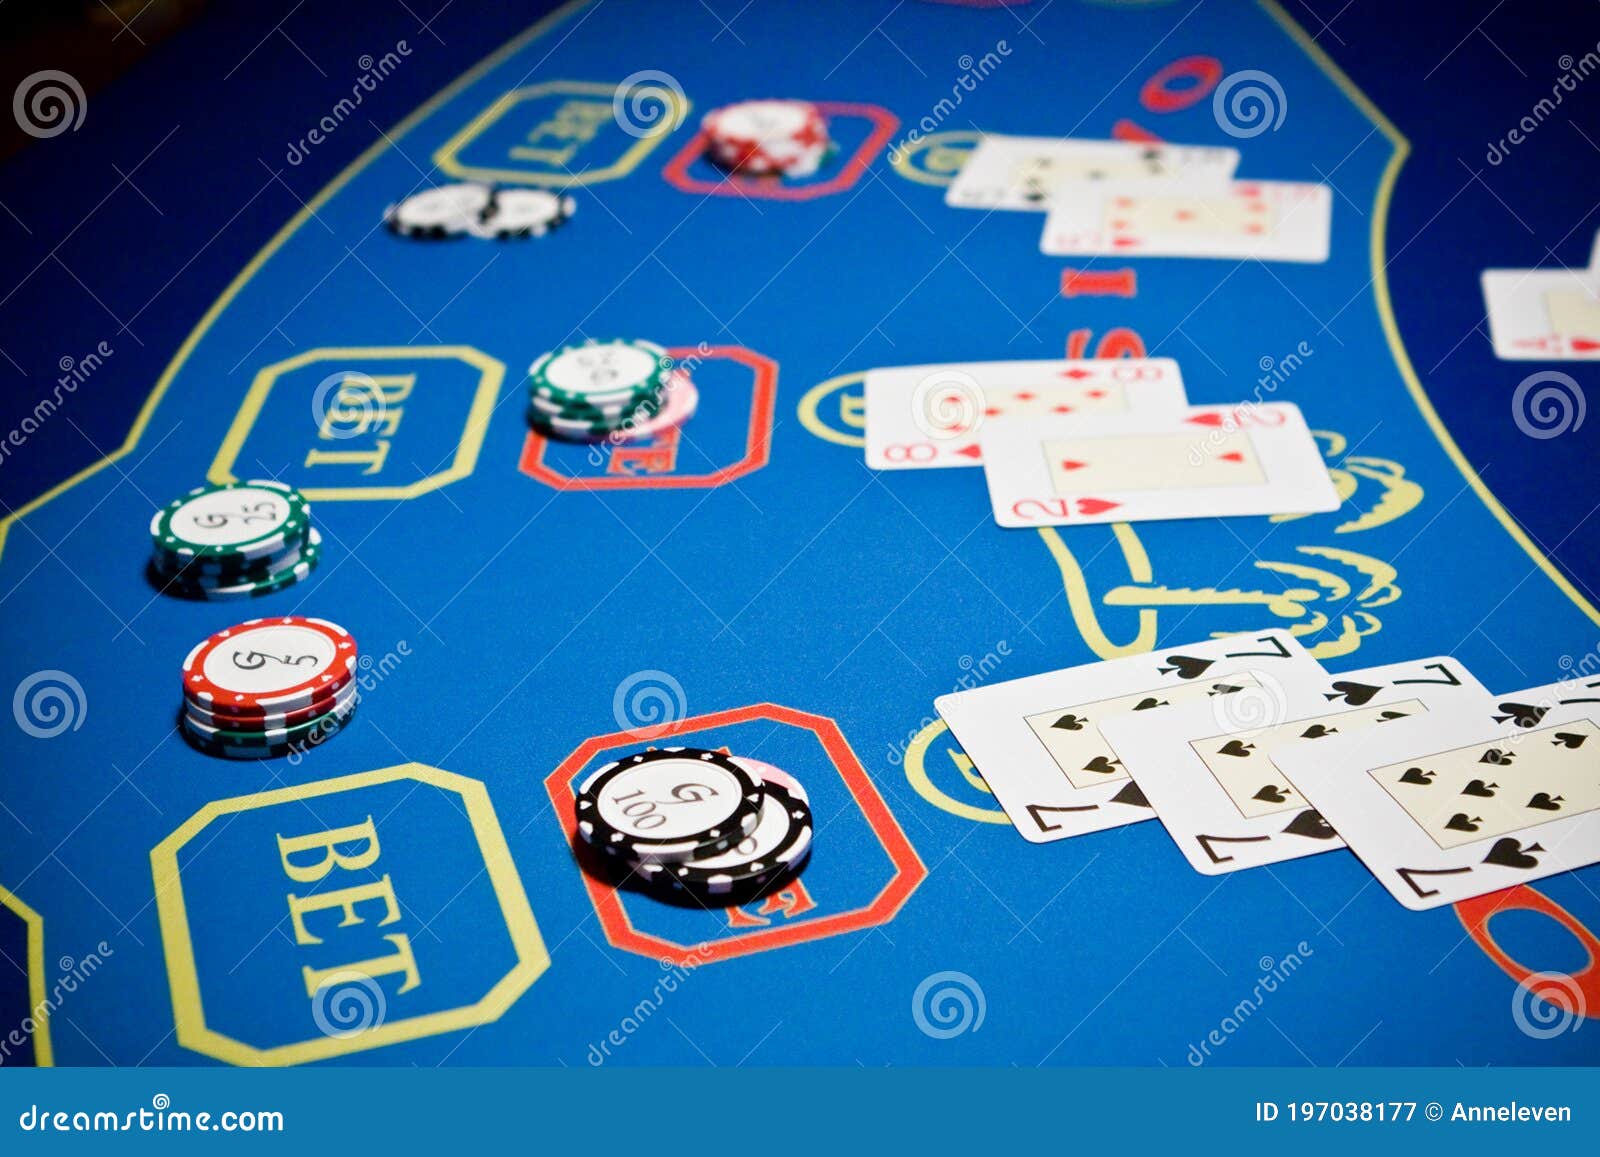 Cómo se llama el que reparte las cartas en póker? ✓ Tips 2021